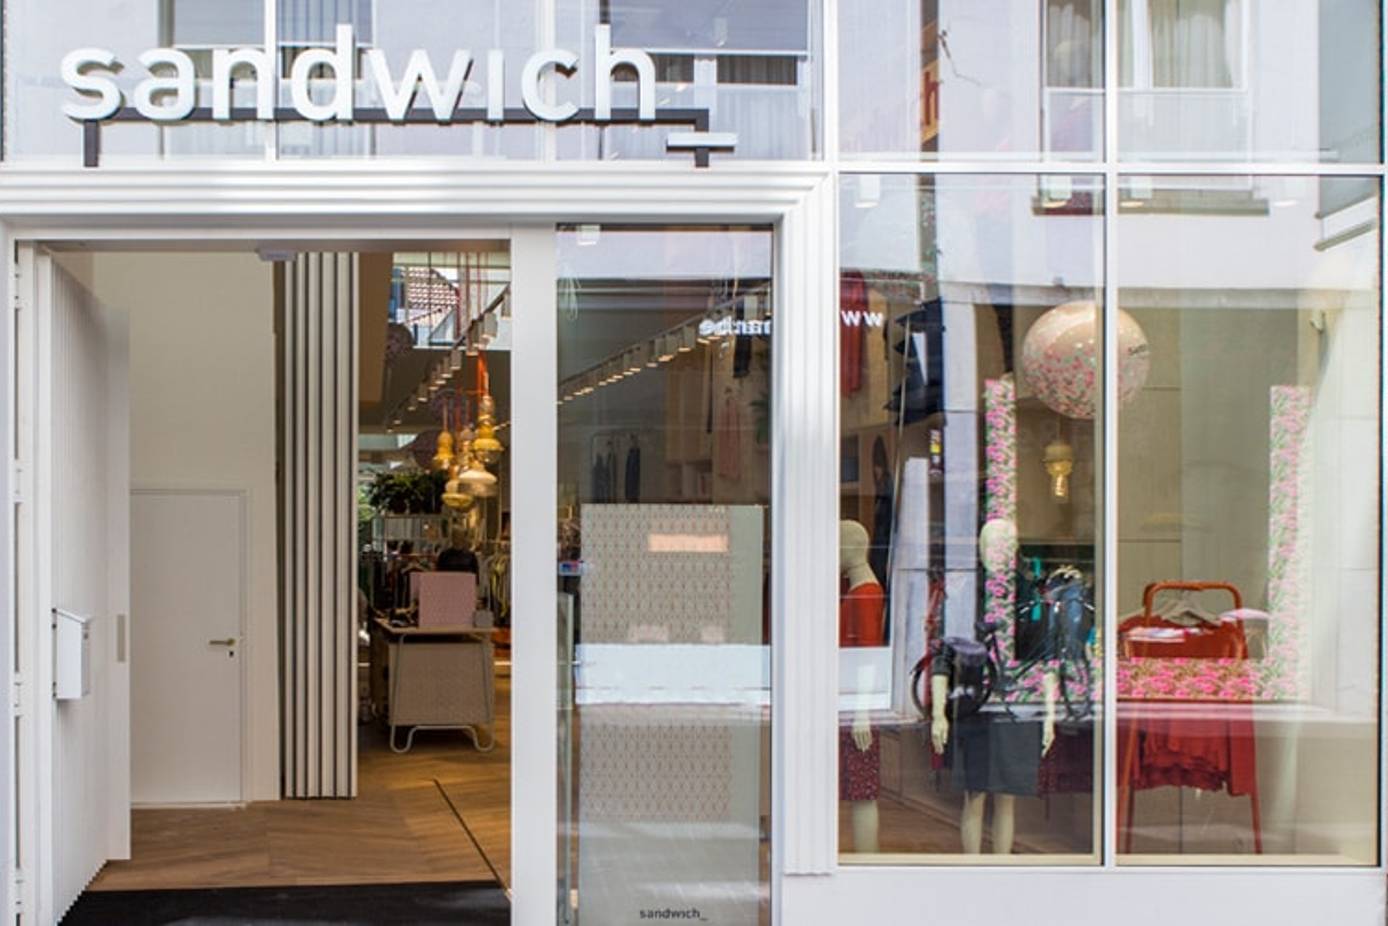 geboorte Saga kop Zien: nieuwe Sandwich-winkel in Antwerpen